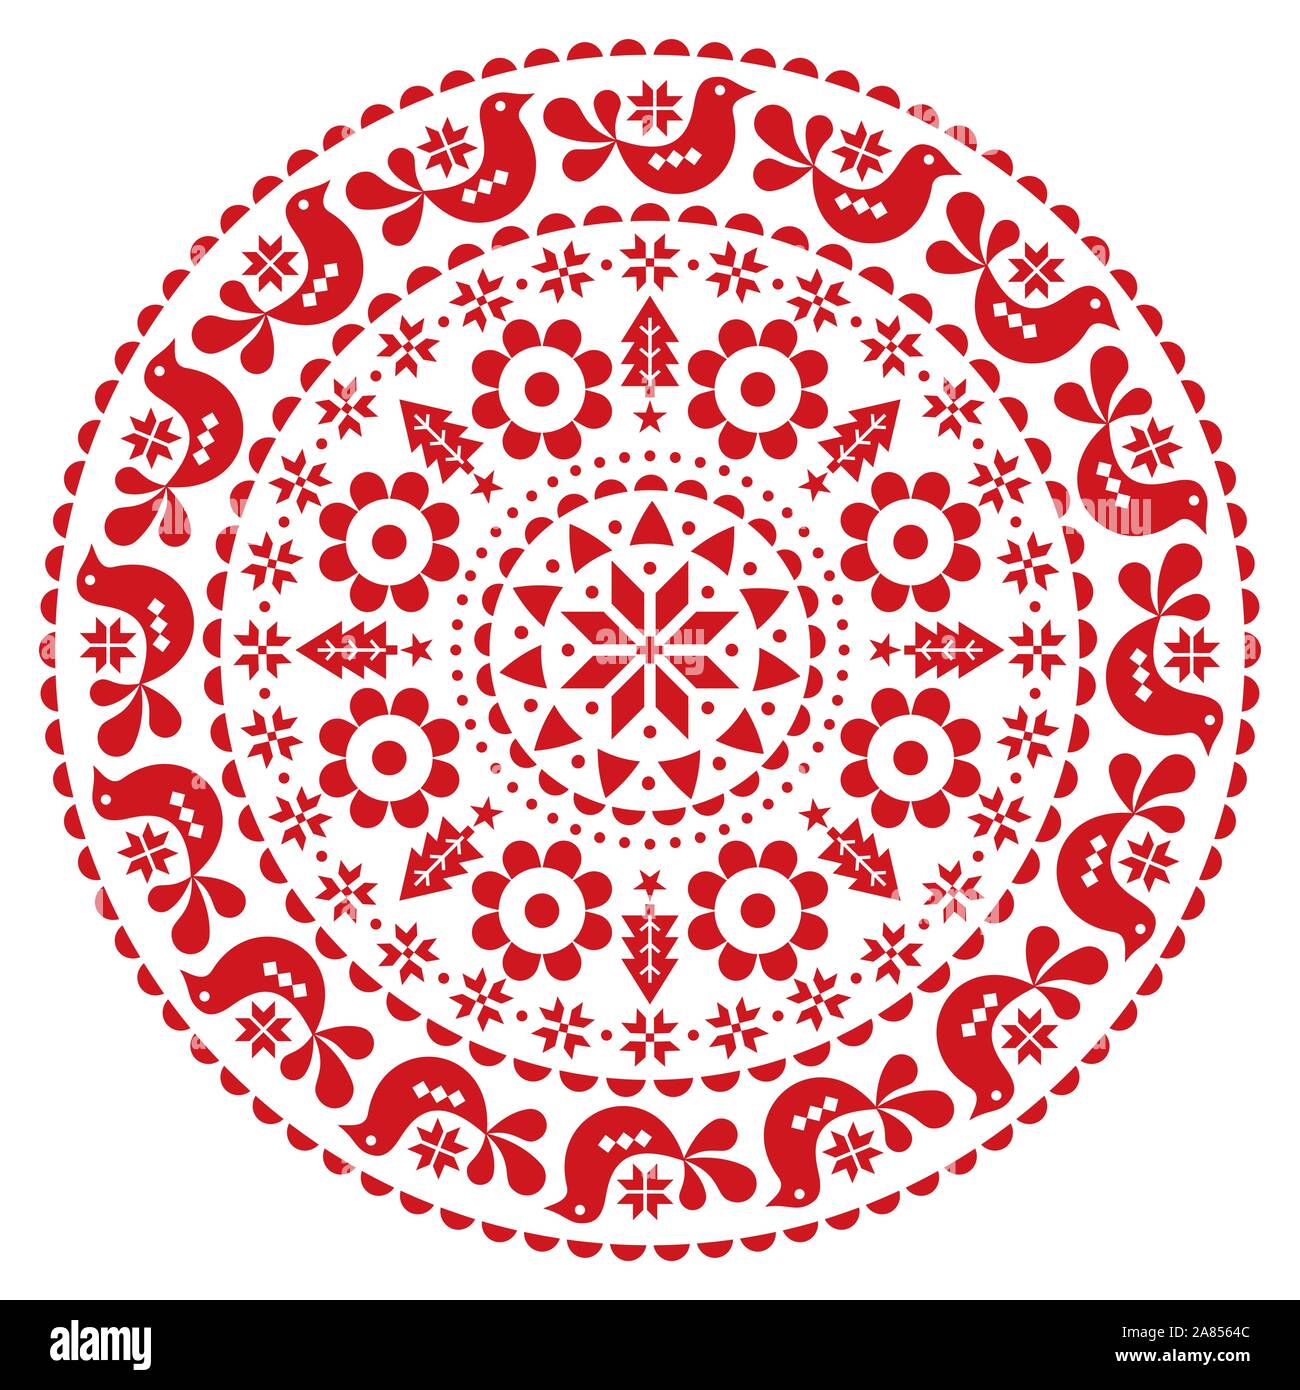 Natale folk scandinava design vettoriali mandala- inverno round pattern festosa, grazioso ornamento floreale con uccelli e fiocchi di neve in rosso su bianco backgr Illustrazione Vettoriale